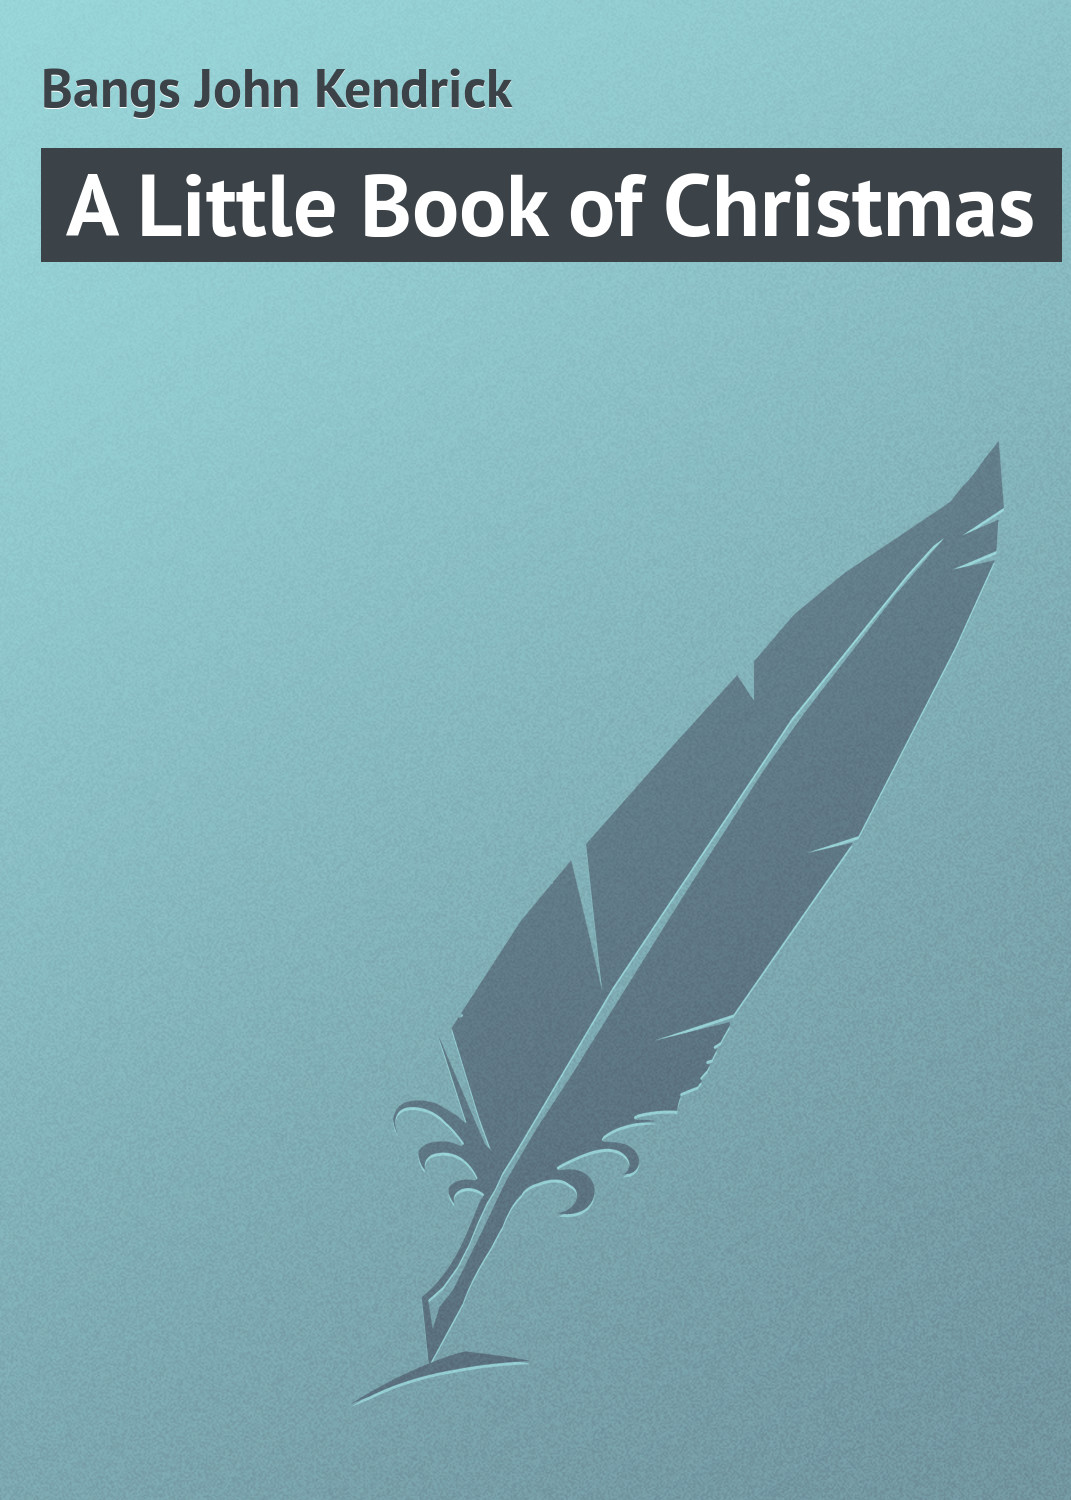 Книга A Little Book of Christmas из серии , созданная John Bangs, может относится к жанру Зарубежная классика. Стоимость электронной книги A Little Book of Christmas с идентификатором 23164275 составляет 5.99 руб.